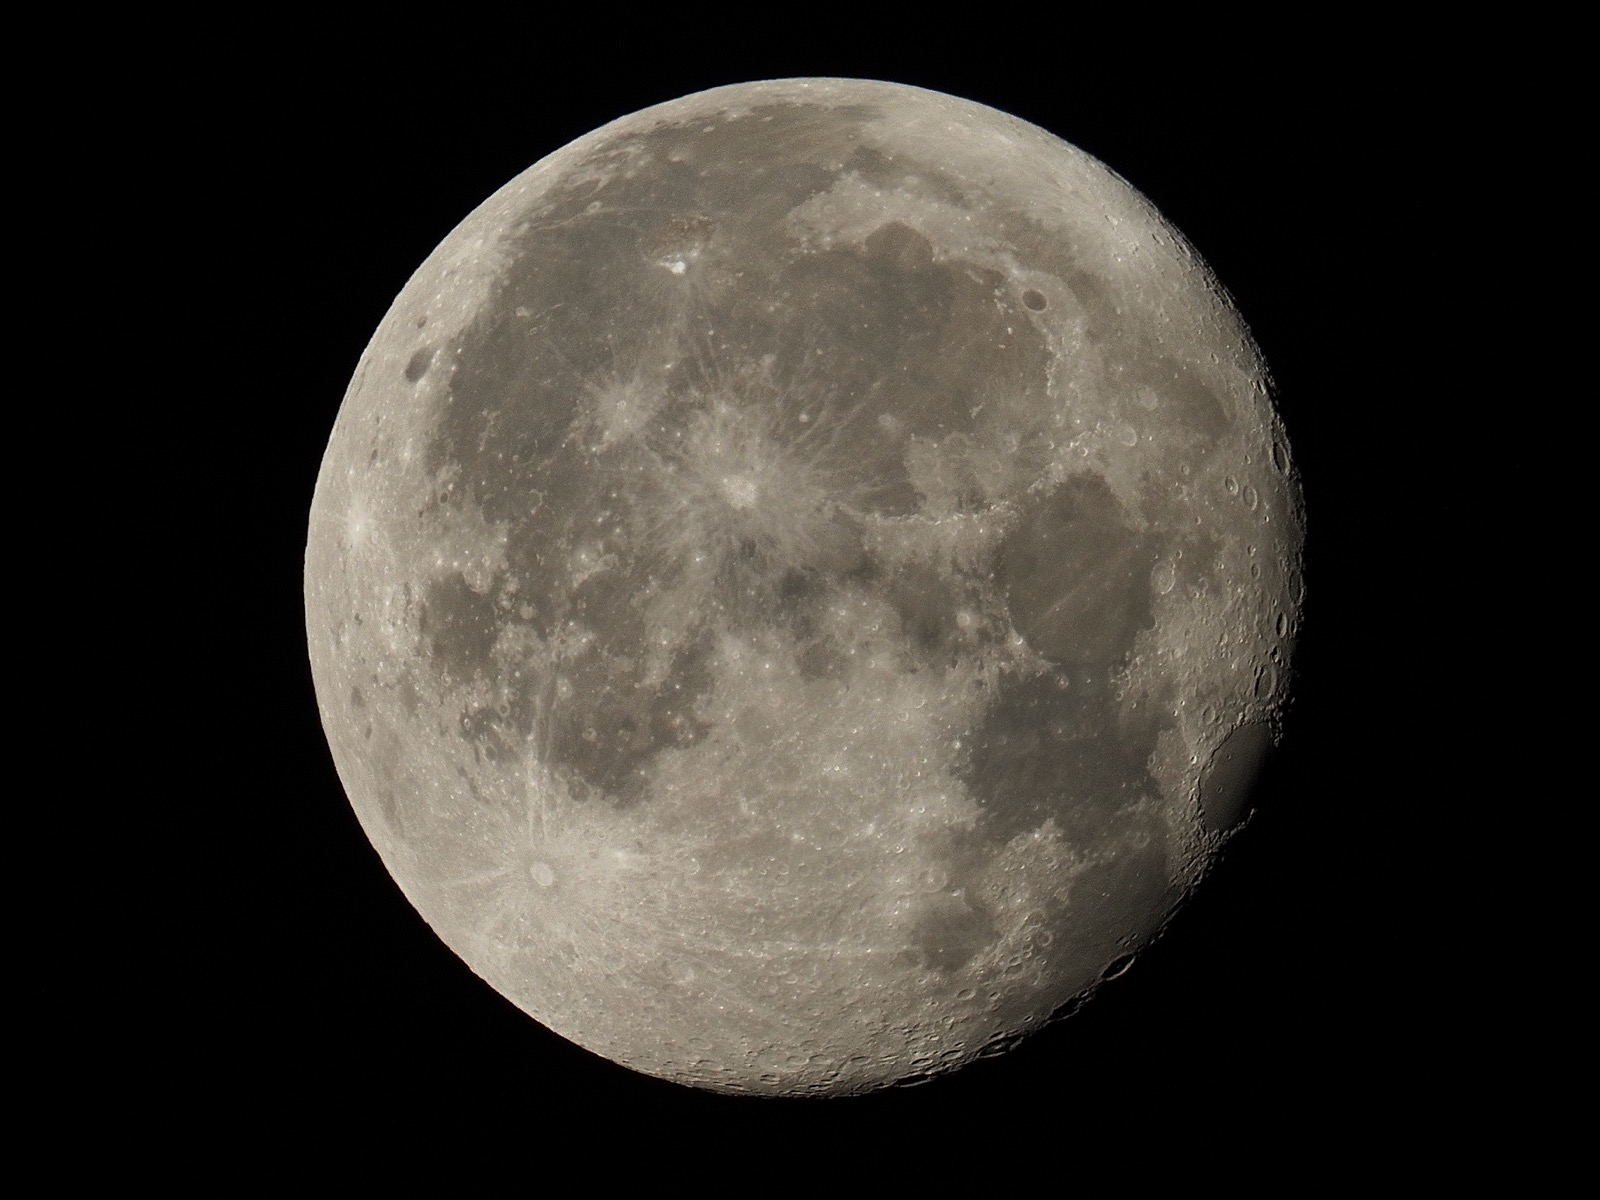 Waning gibbous moon, 95.9% illuminated.